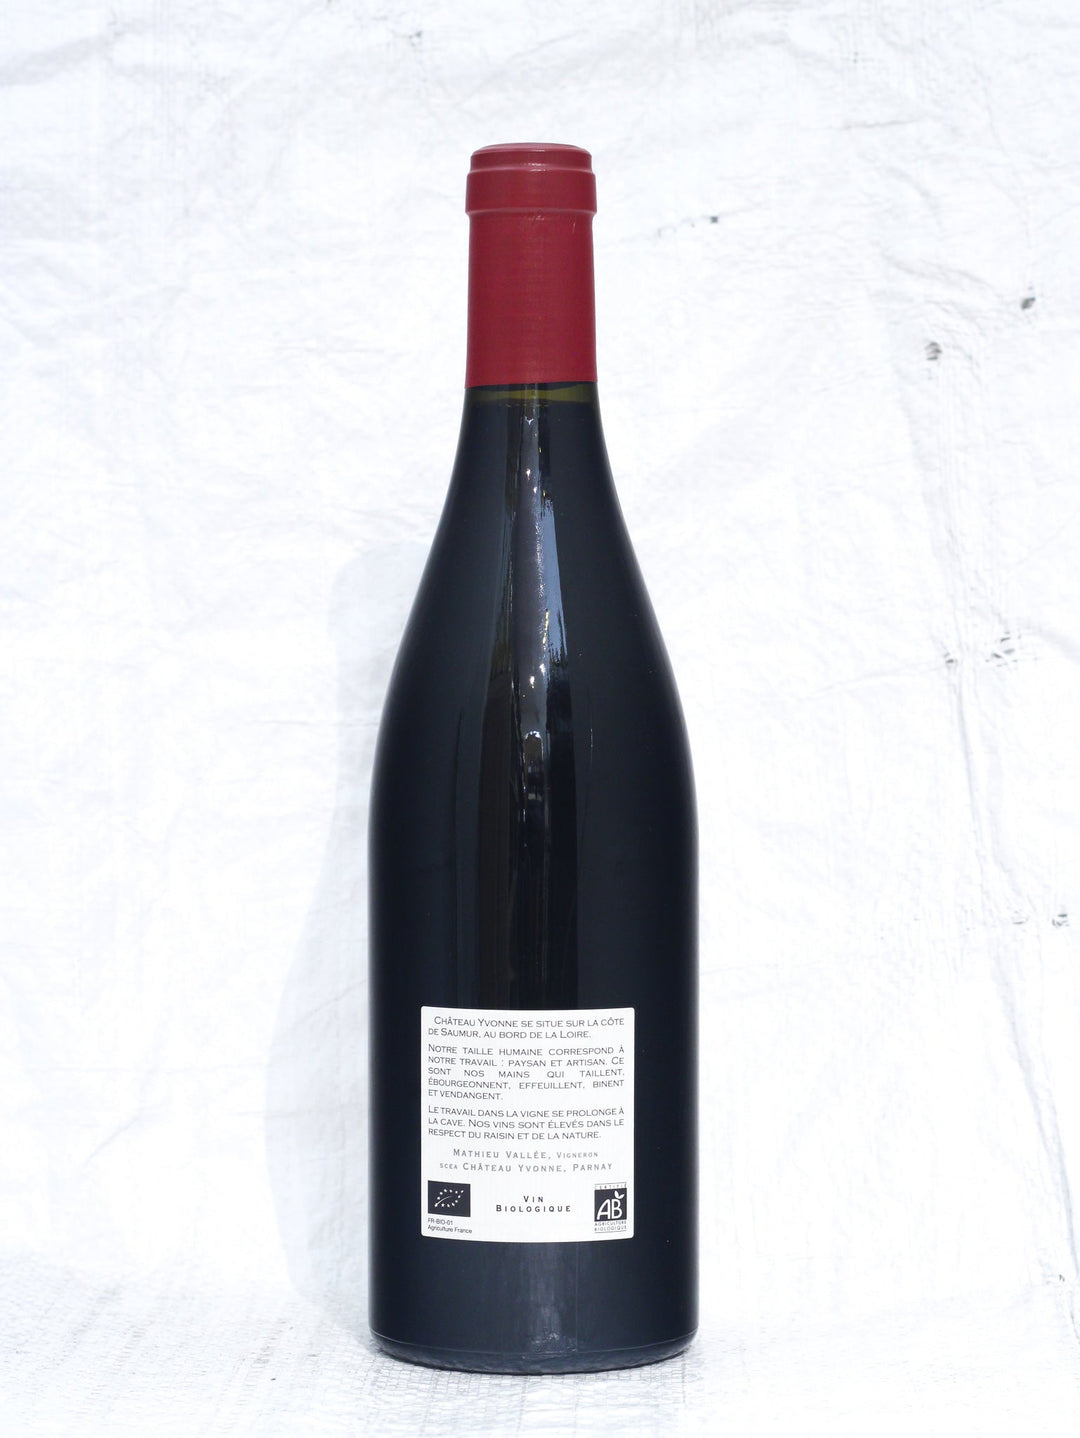 Champigny Rouge 2020 0,75L Bio Wein von Chateau Yvonne